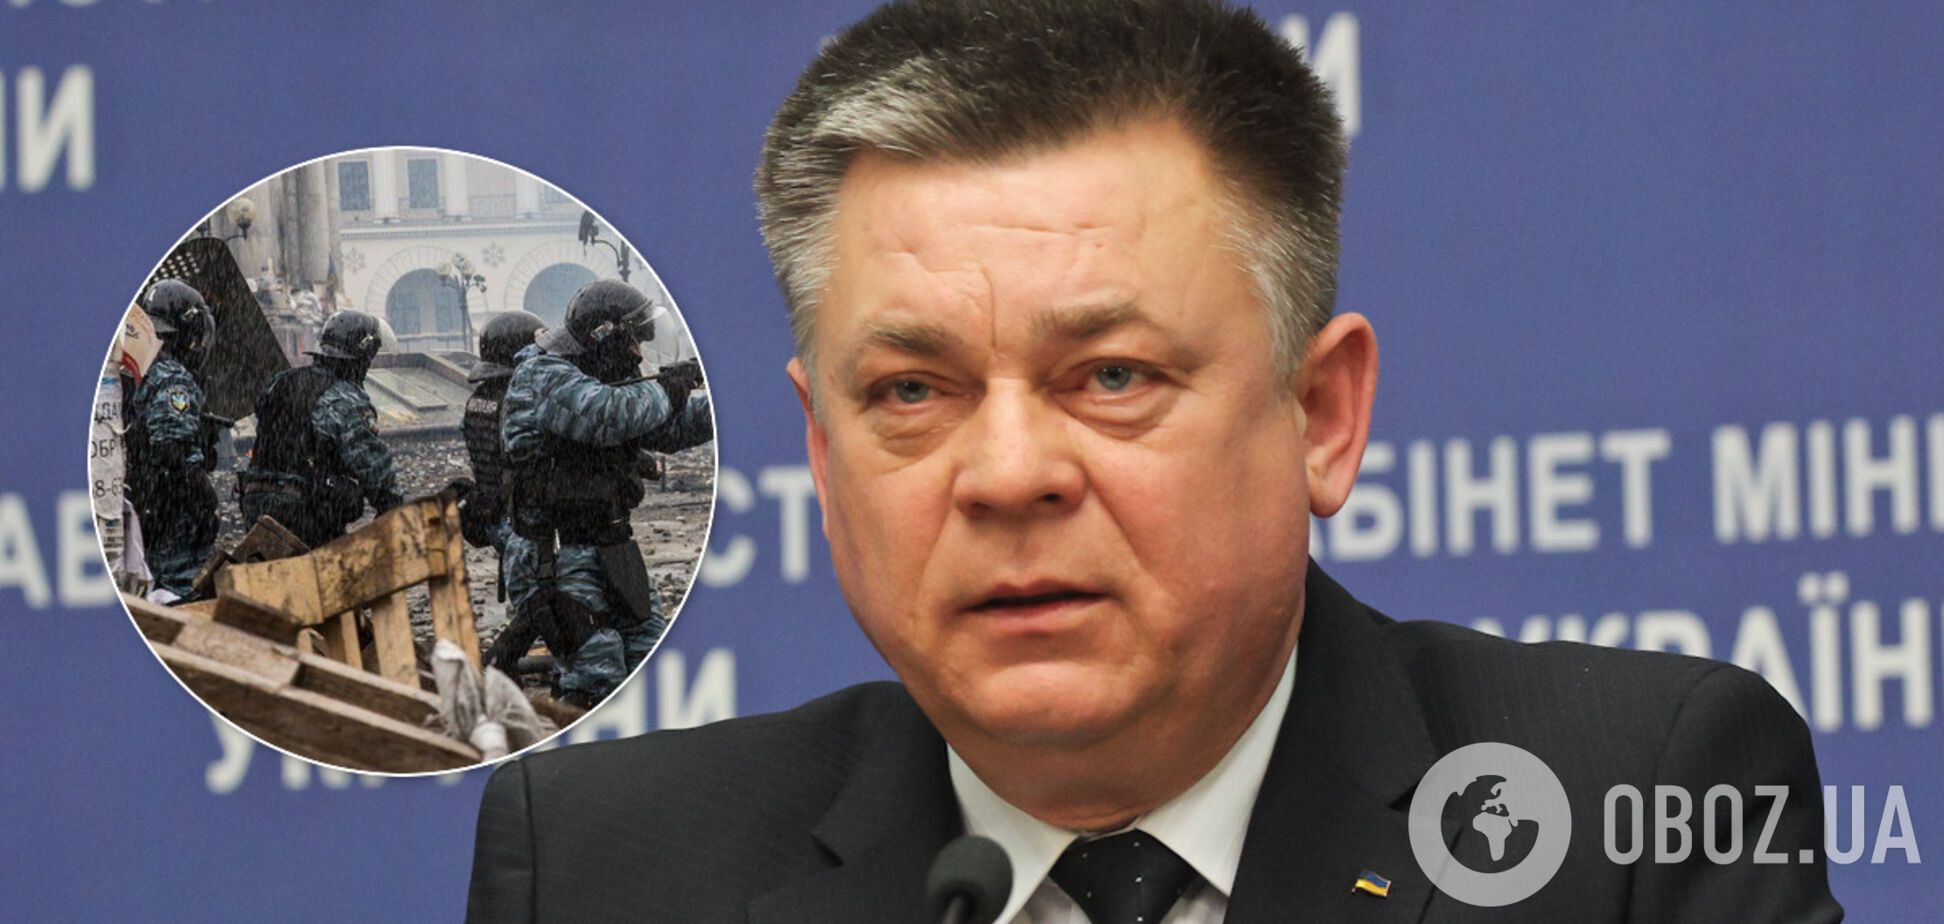 Лебедева заочно арестовали по делу Майдана